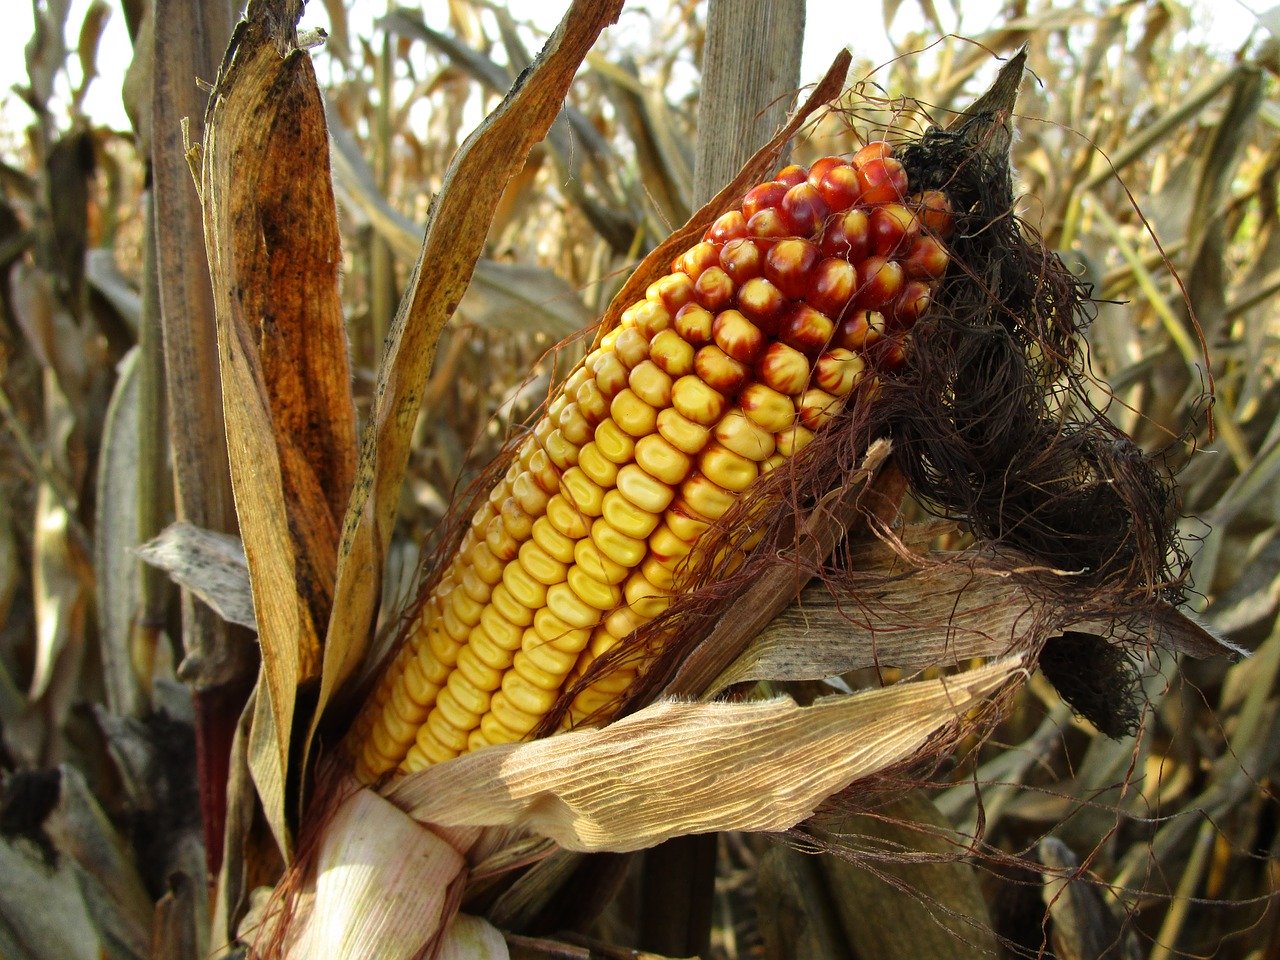 Worki silosowe jako niezbędny element w produkcji kiszonki z kukurydzy - Zdjęcie główne